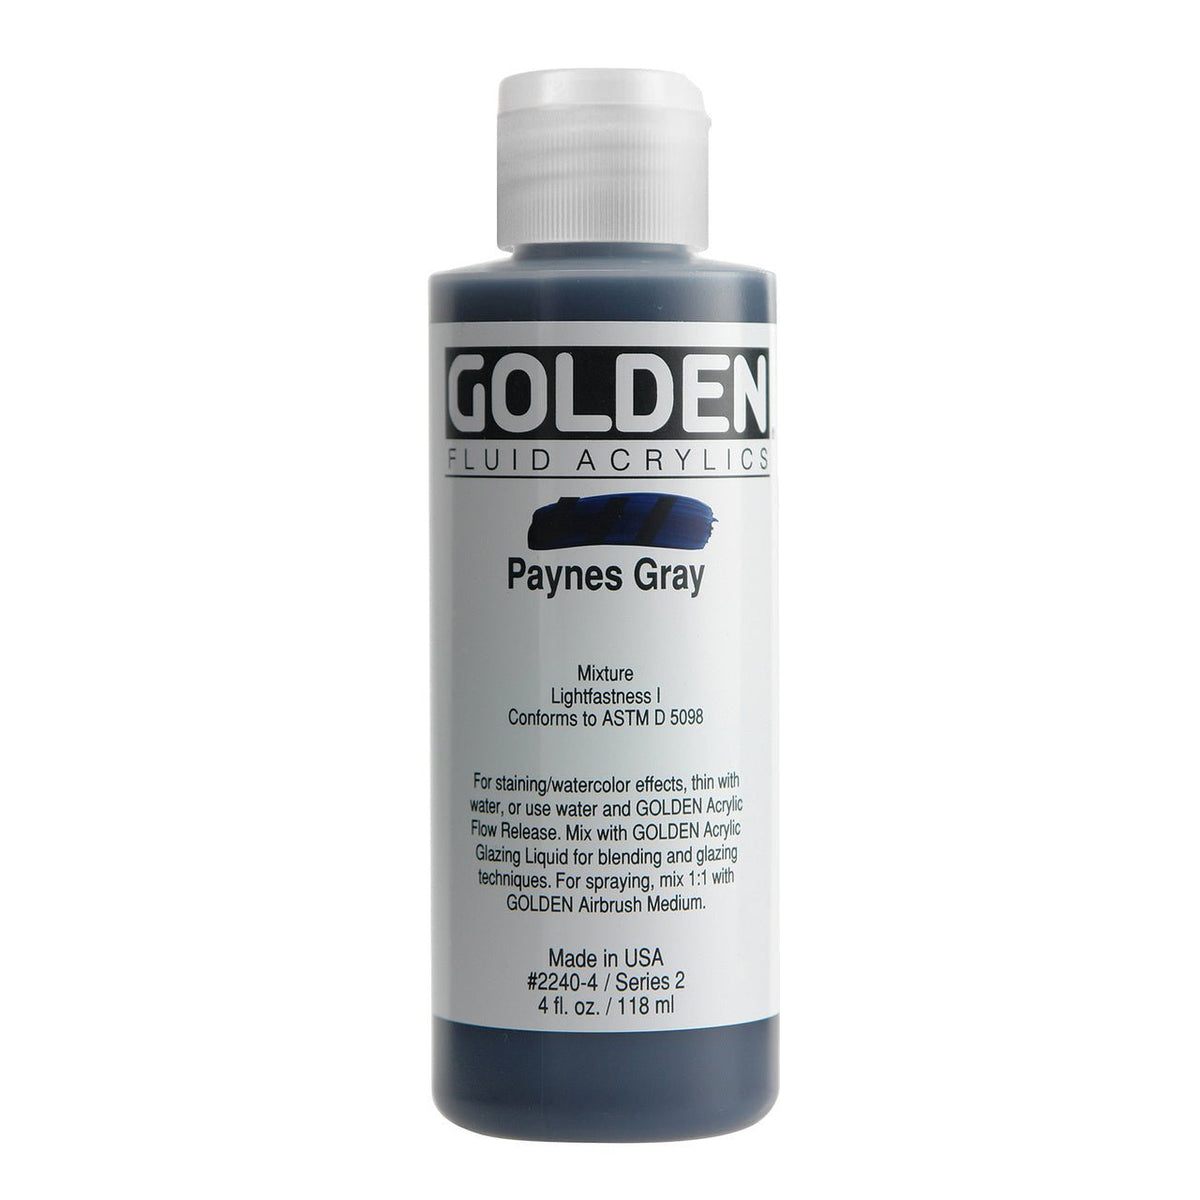 Golden Fluid Acrylic Paynes Gray 4 oz - merriartist.com